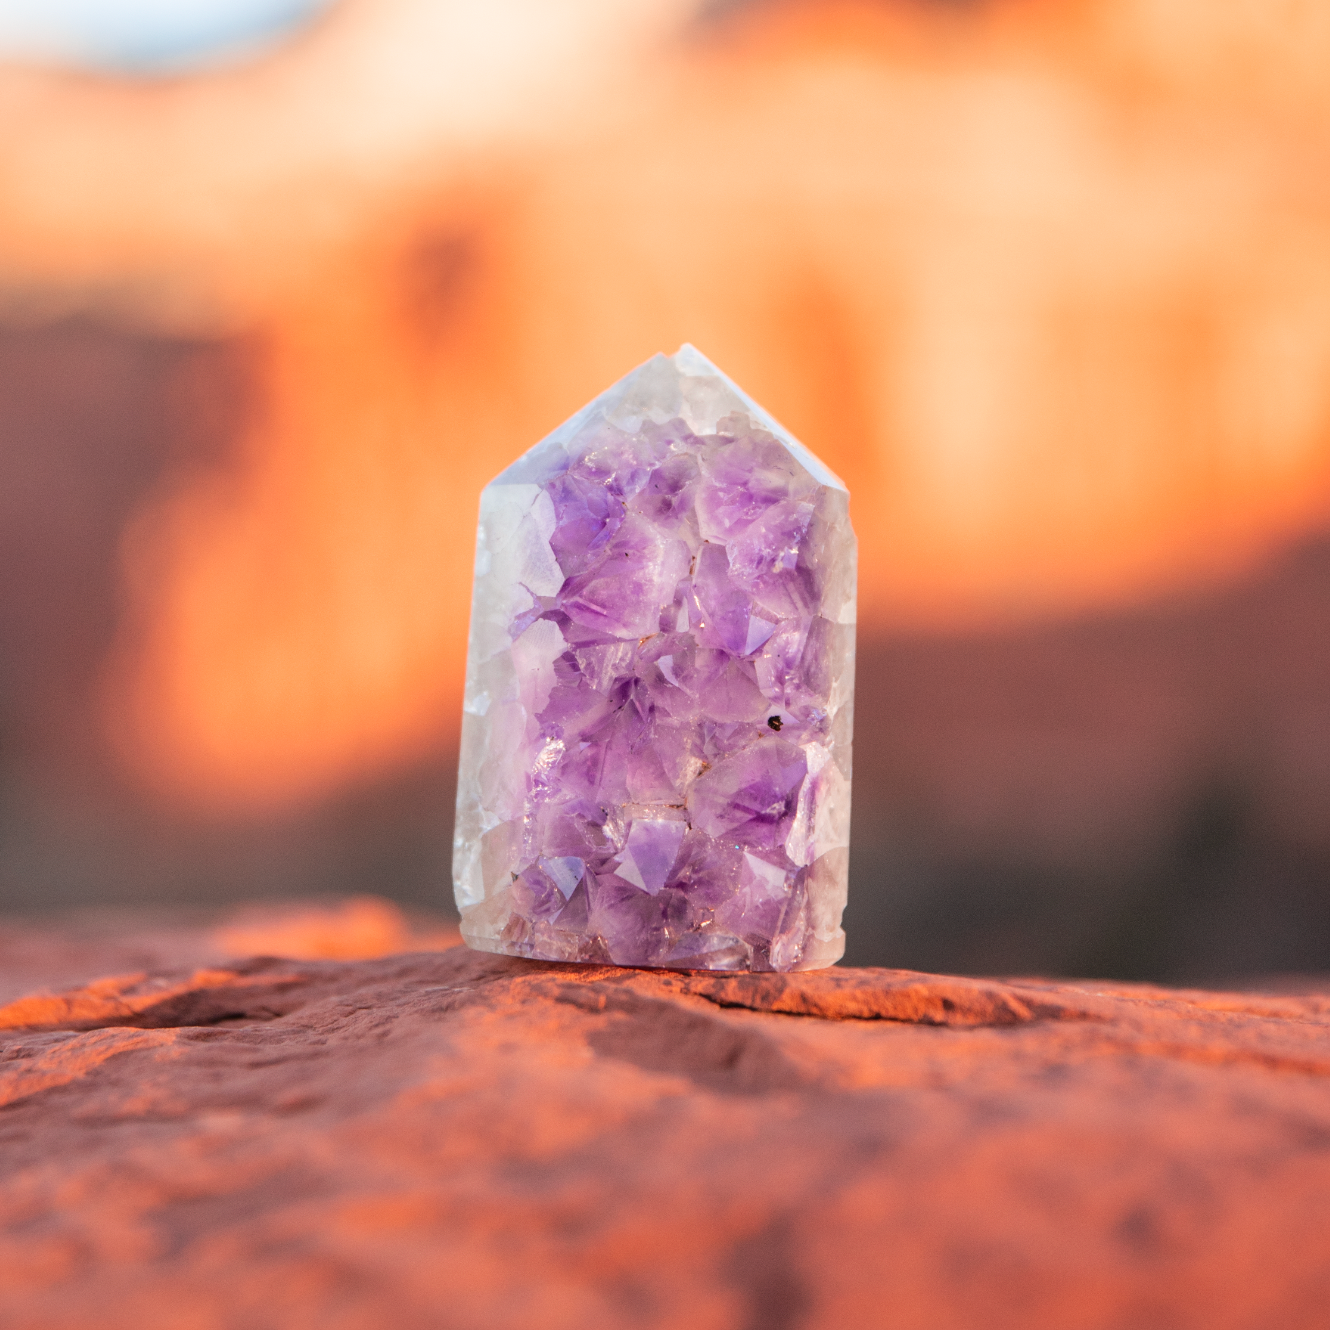 healing crystals: amethyst crystal in sedona, arizona used for energy healing